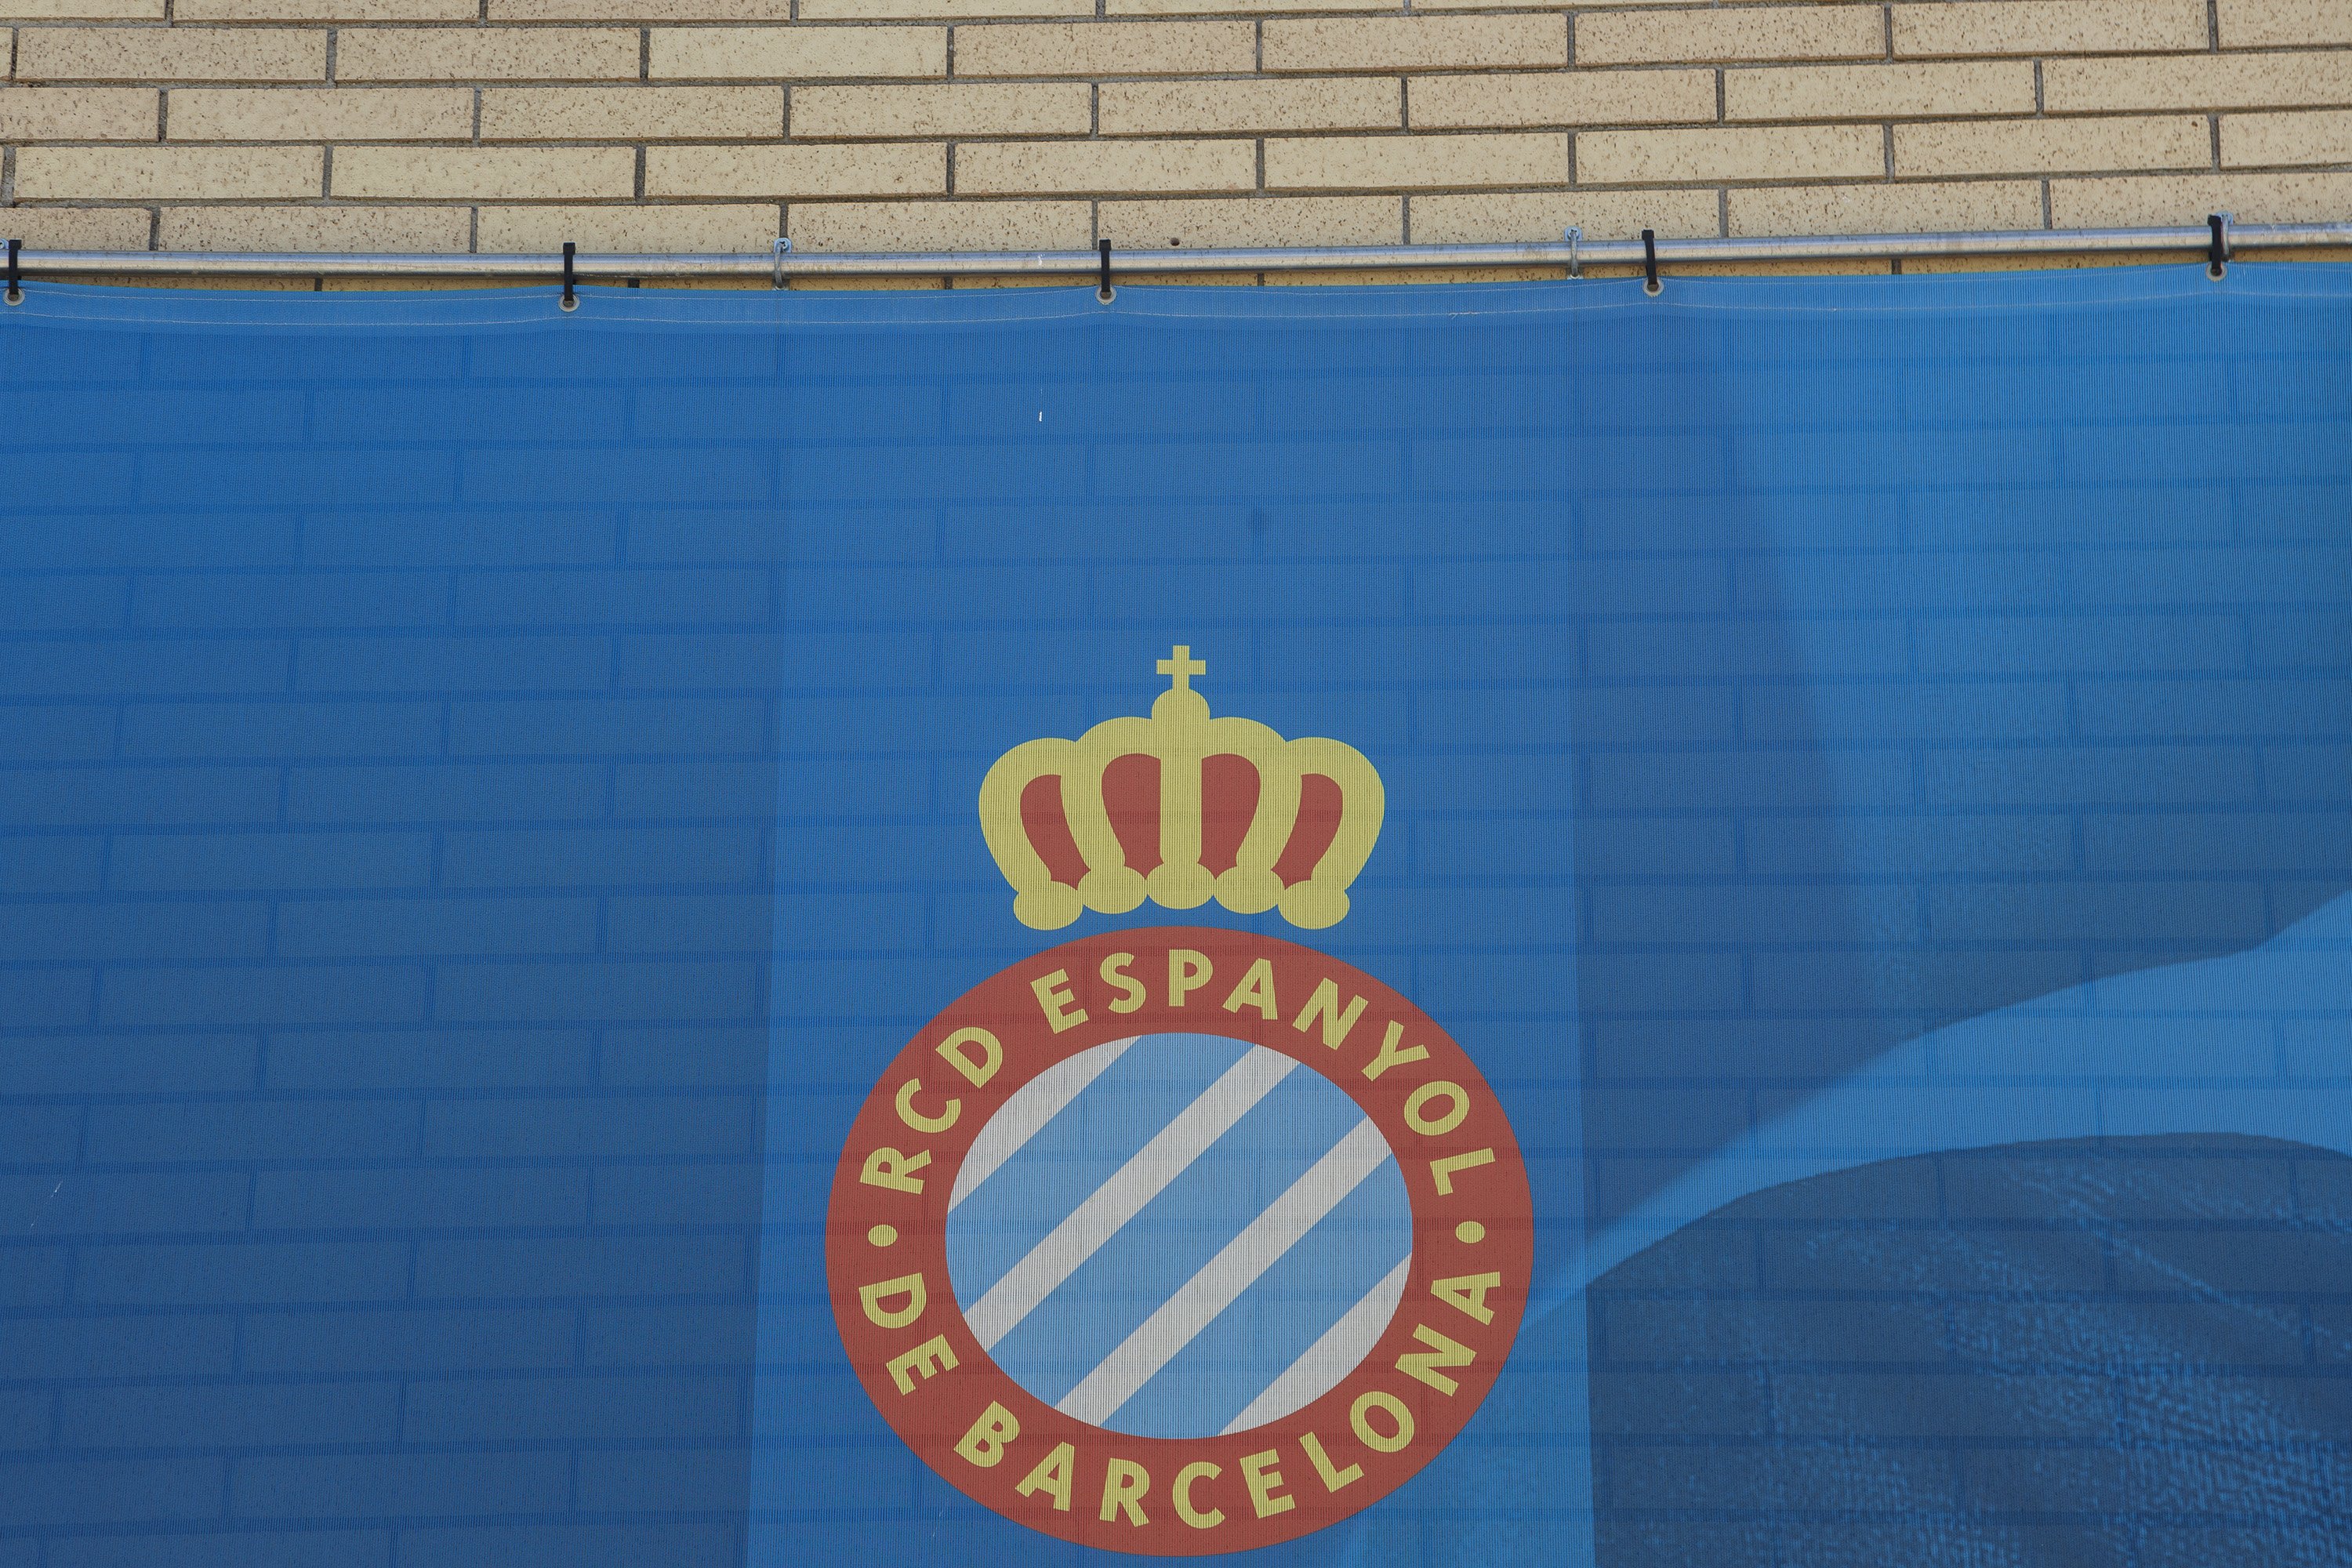 El Espanyol se pone de perfil por el 1-O y los aficionados se quejan